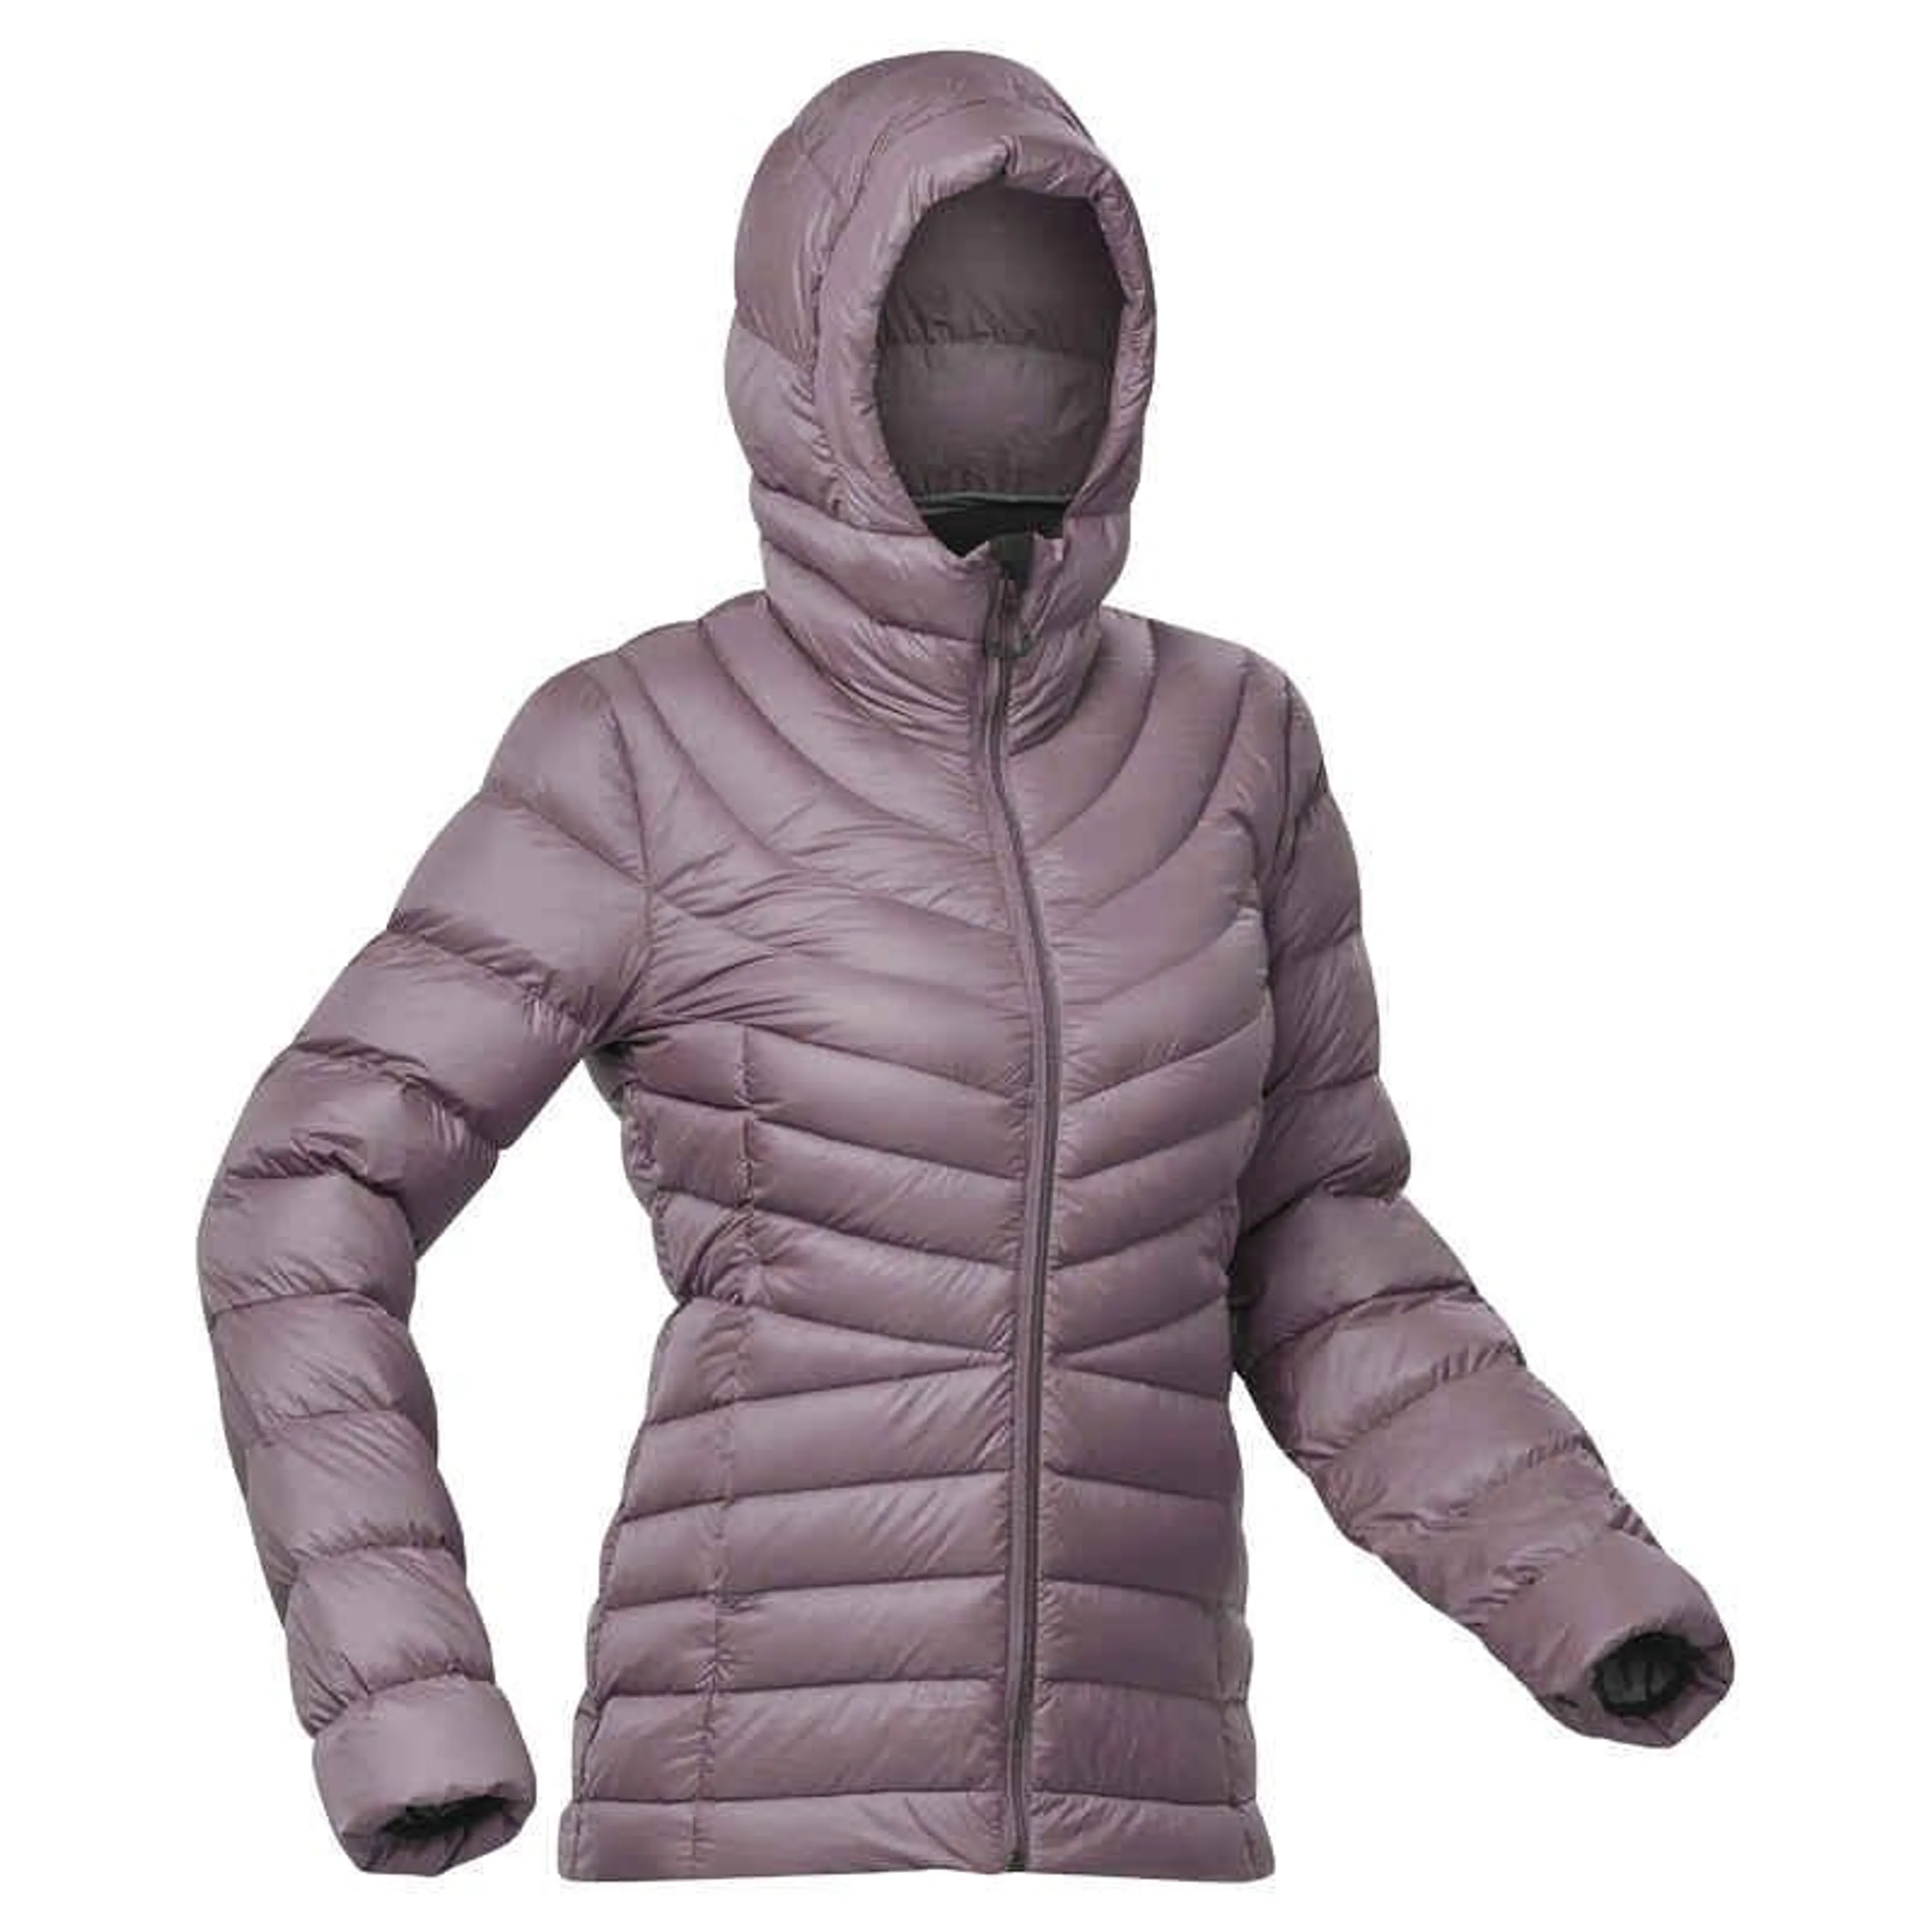 Dámska páperová bunda MT500 s kapucňou na horskú turistiku do -10 °C fialová